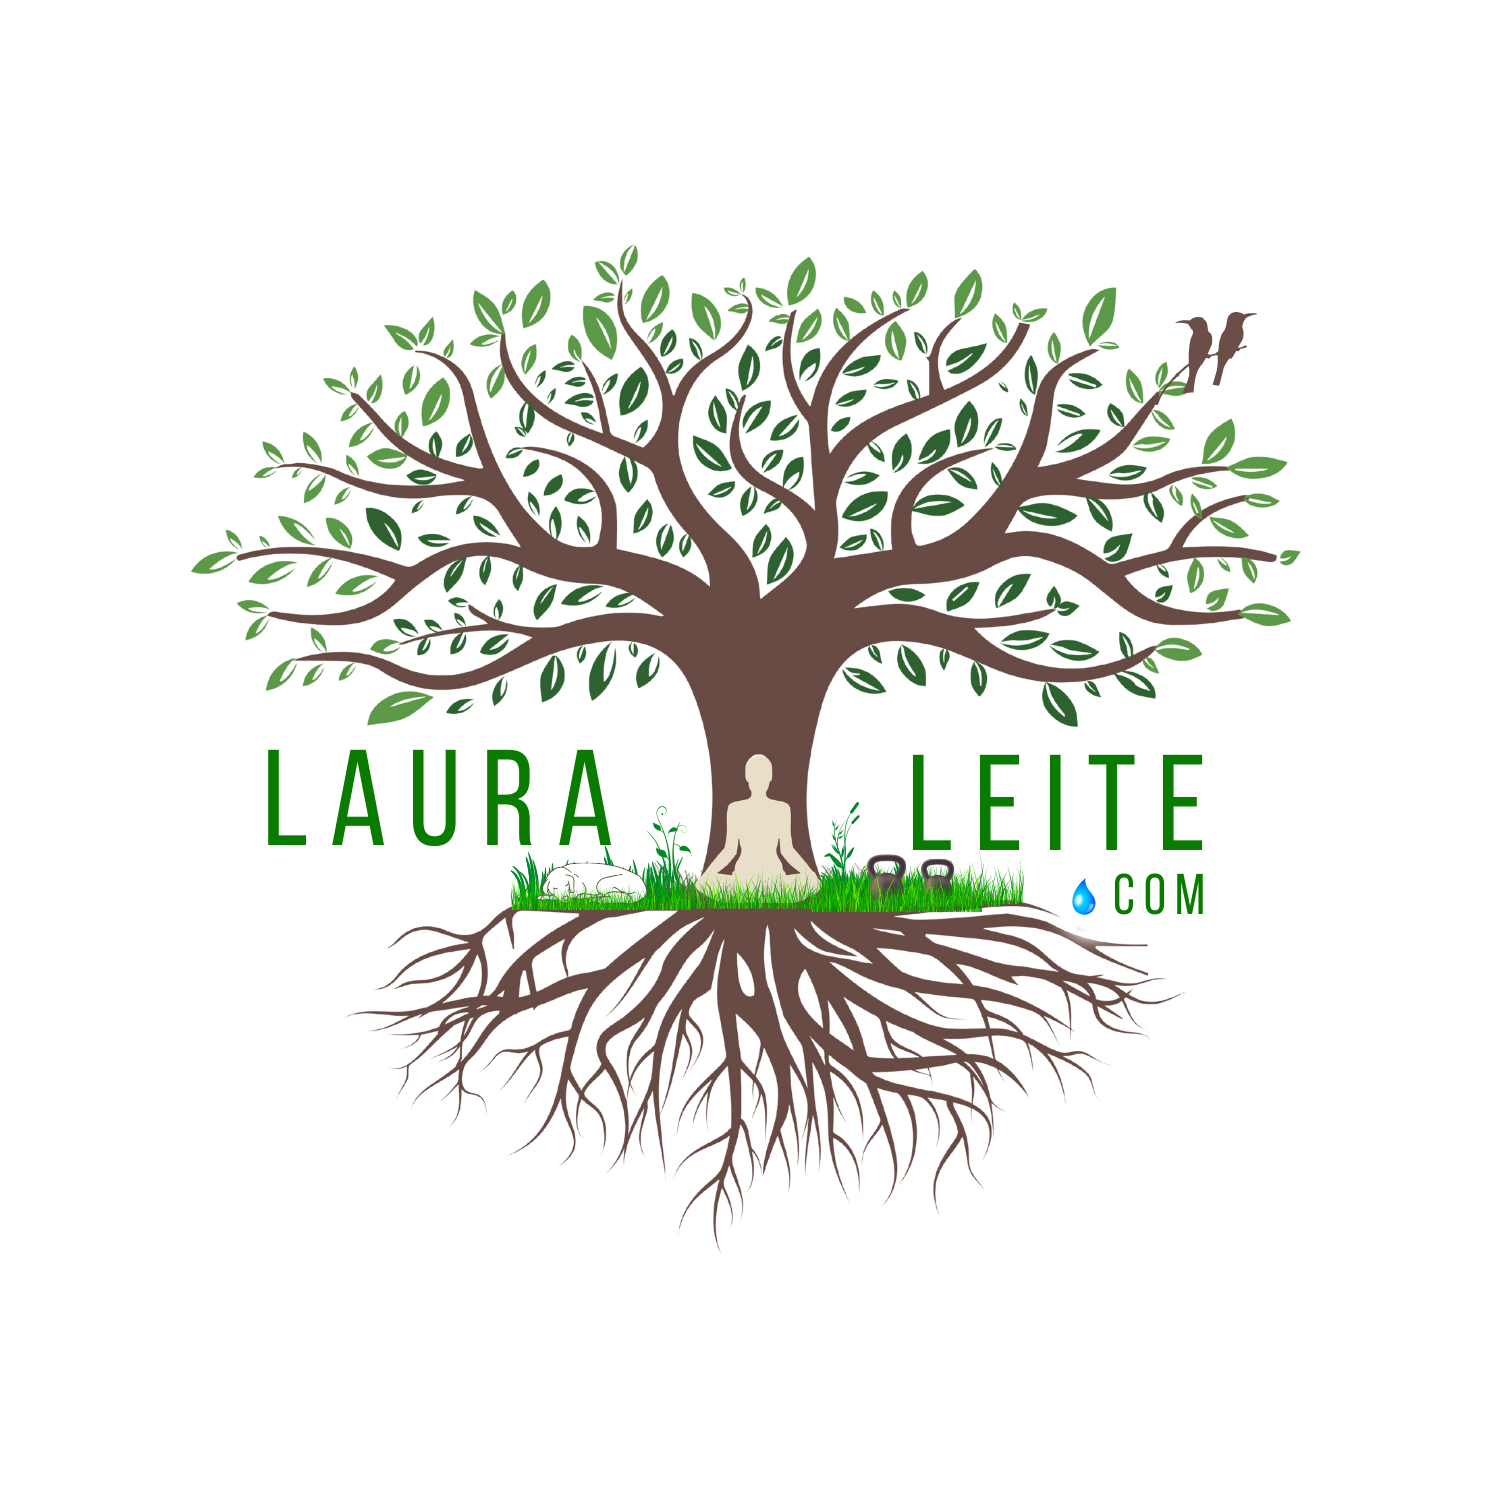 LauraLeite.com